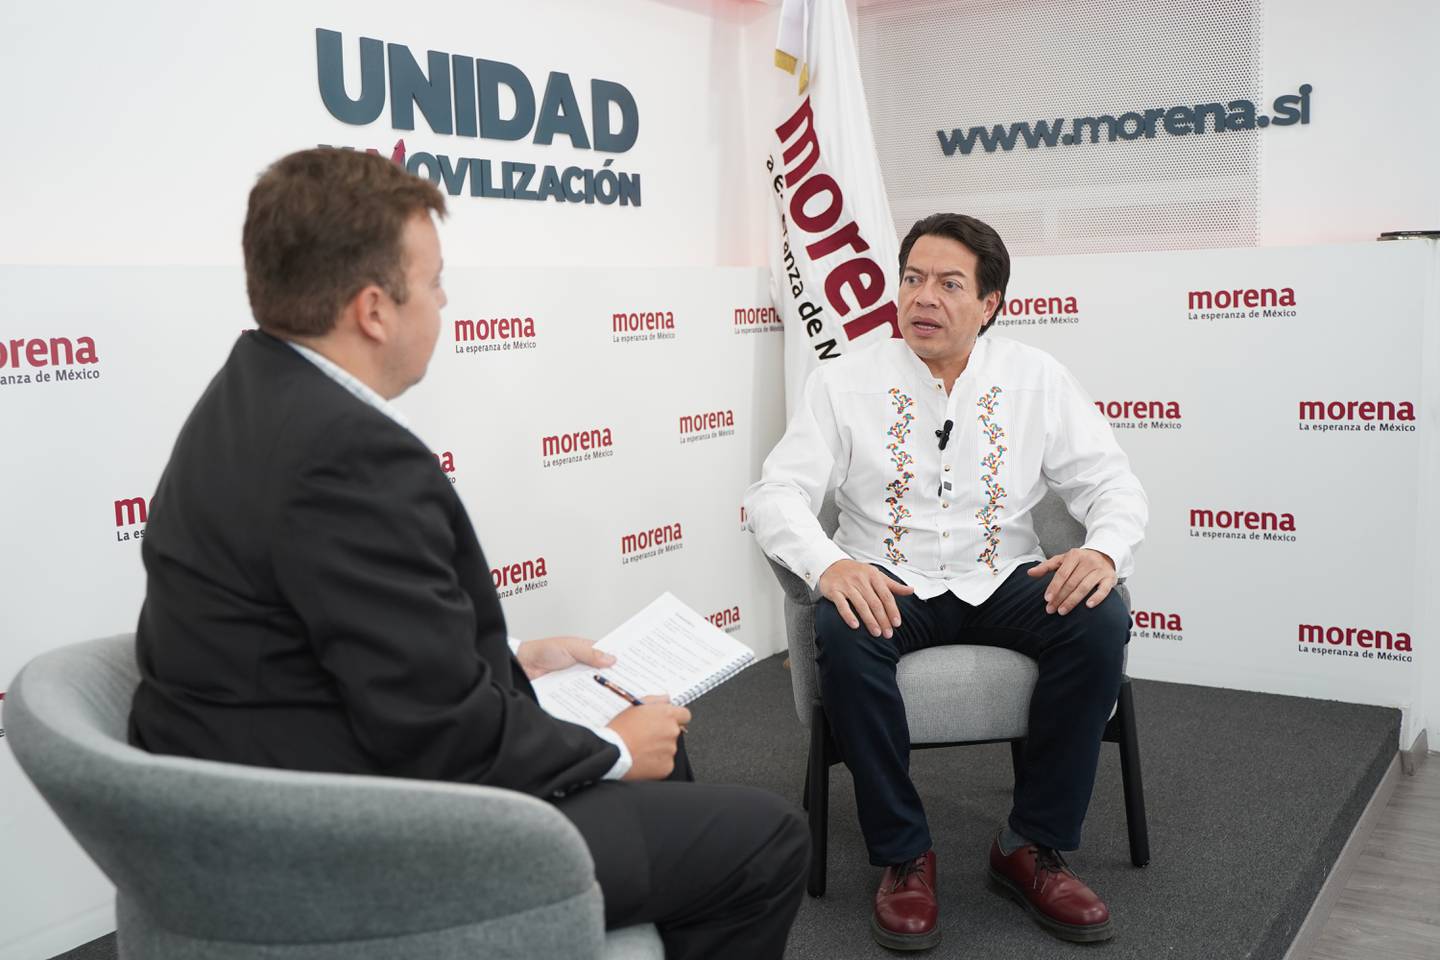 Mario Delgado: Morena vive un proceso de renovación y liderazgo rumbo al 2024